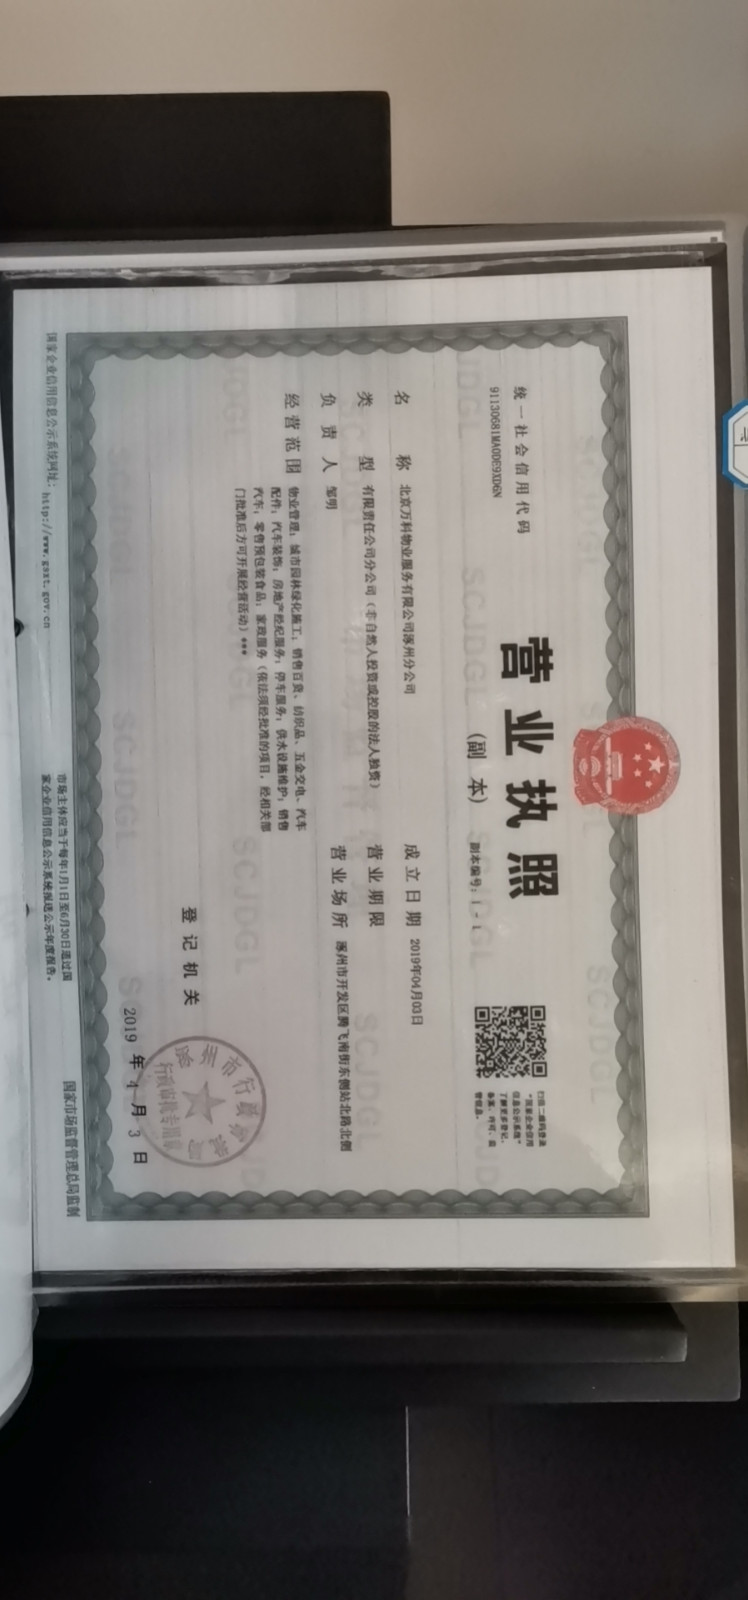  涿州万科城际之光 商品房预售许可证